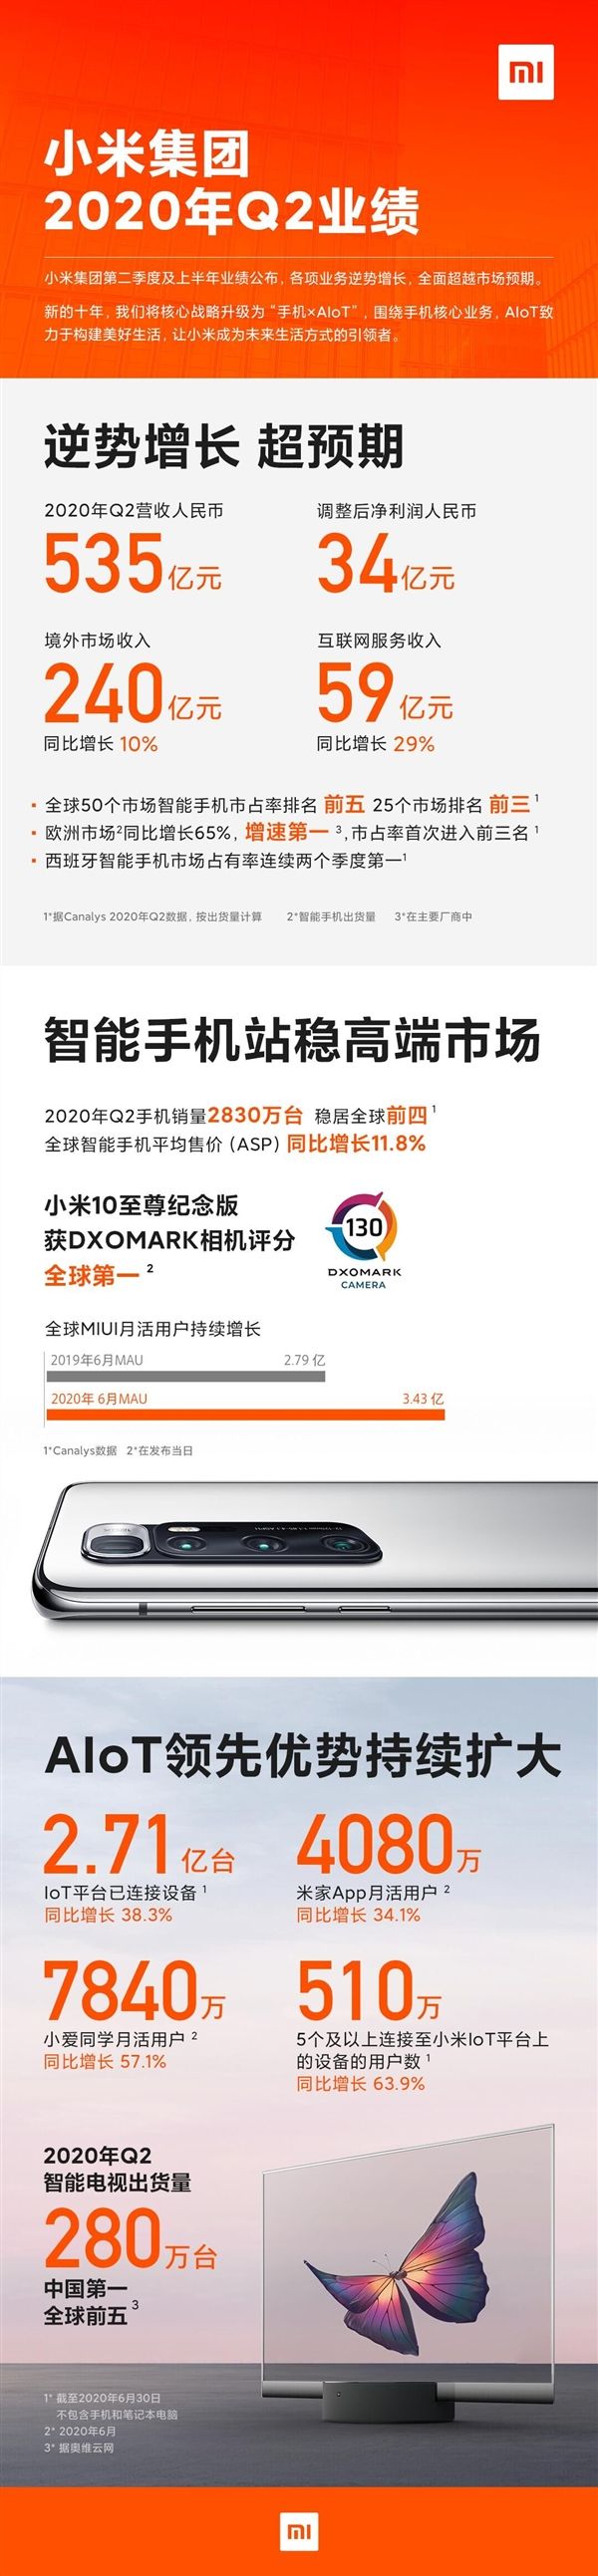 Xiaomi рассказала, сколько ей удалось заработать и как выросла средняя цена на смартфон – фото 1